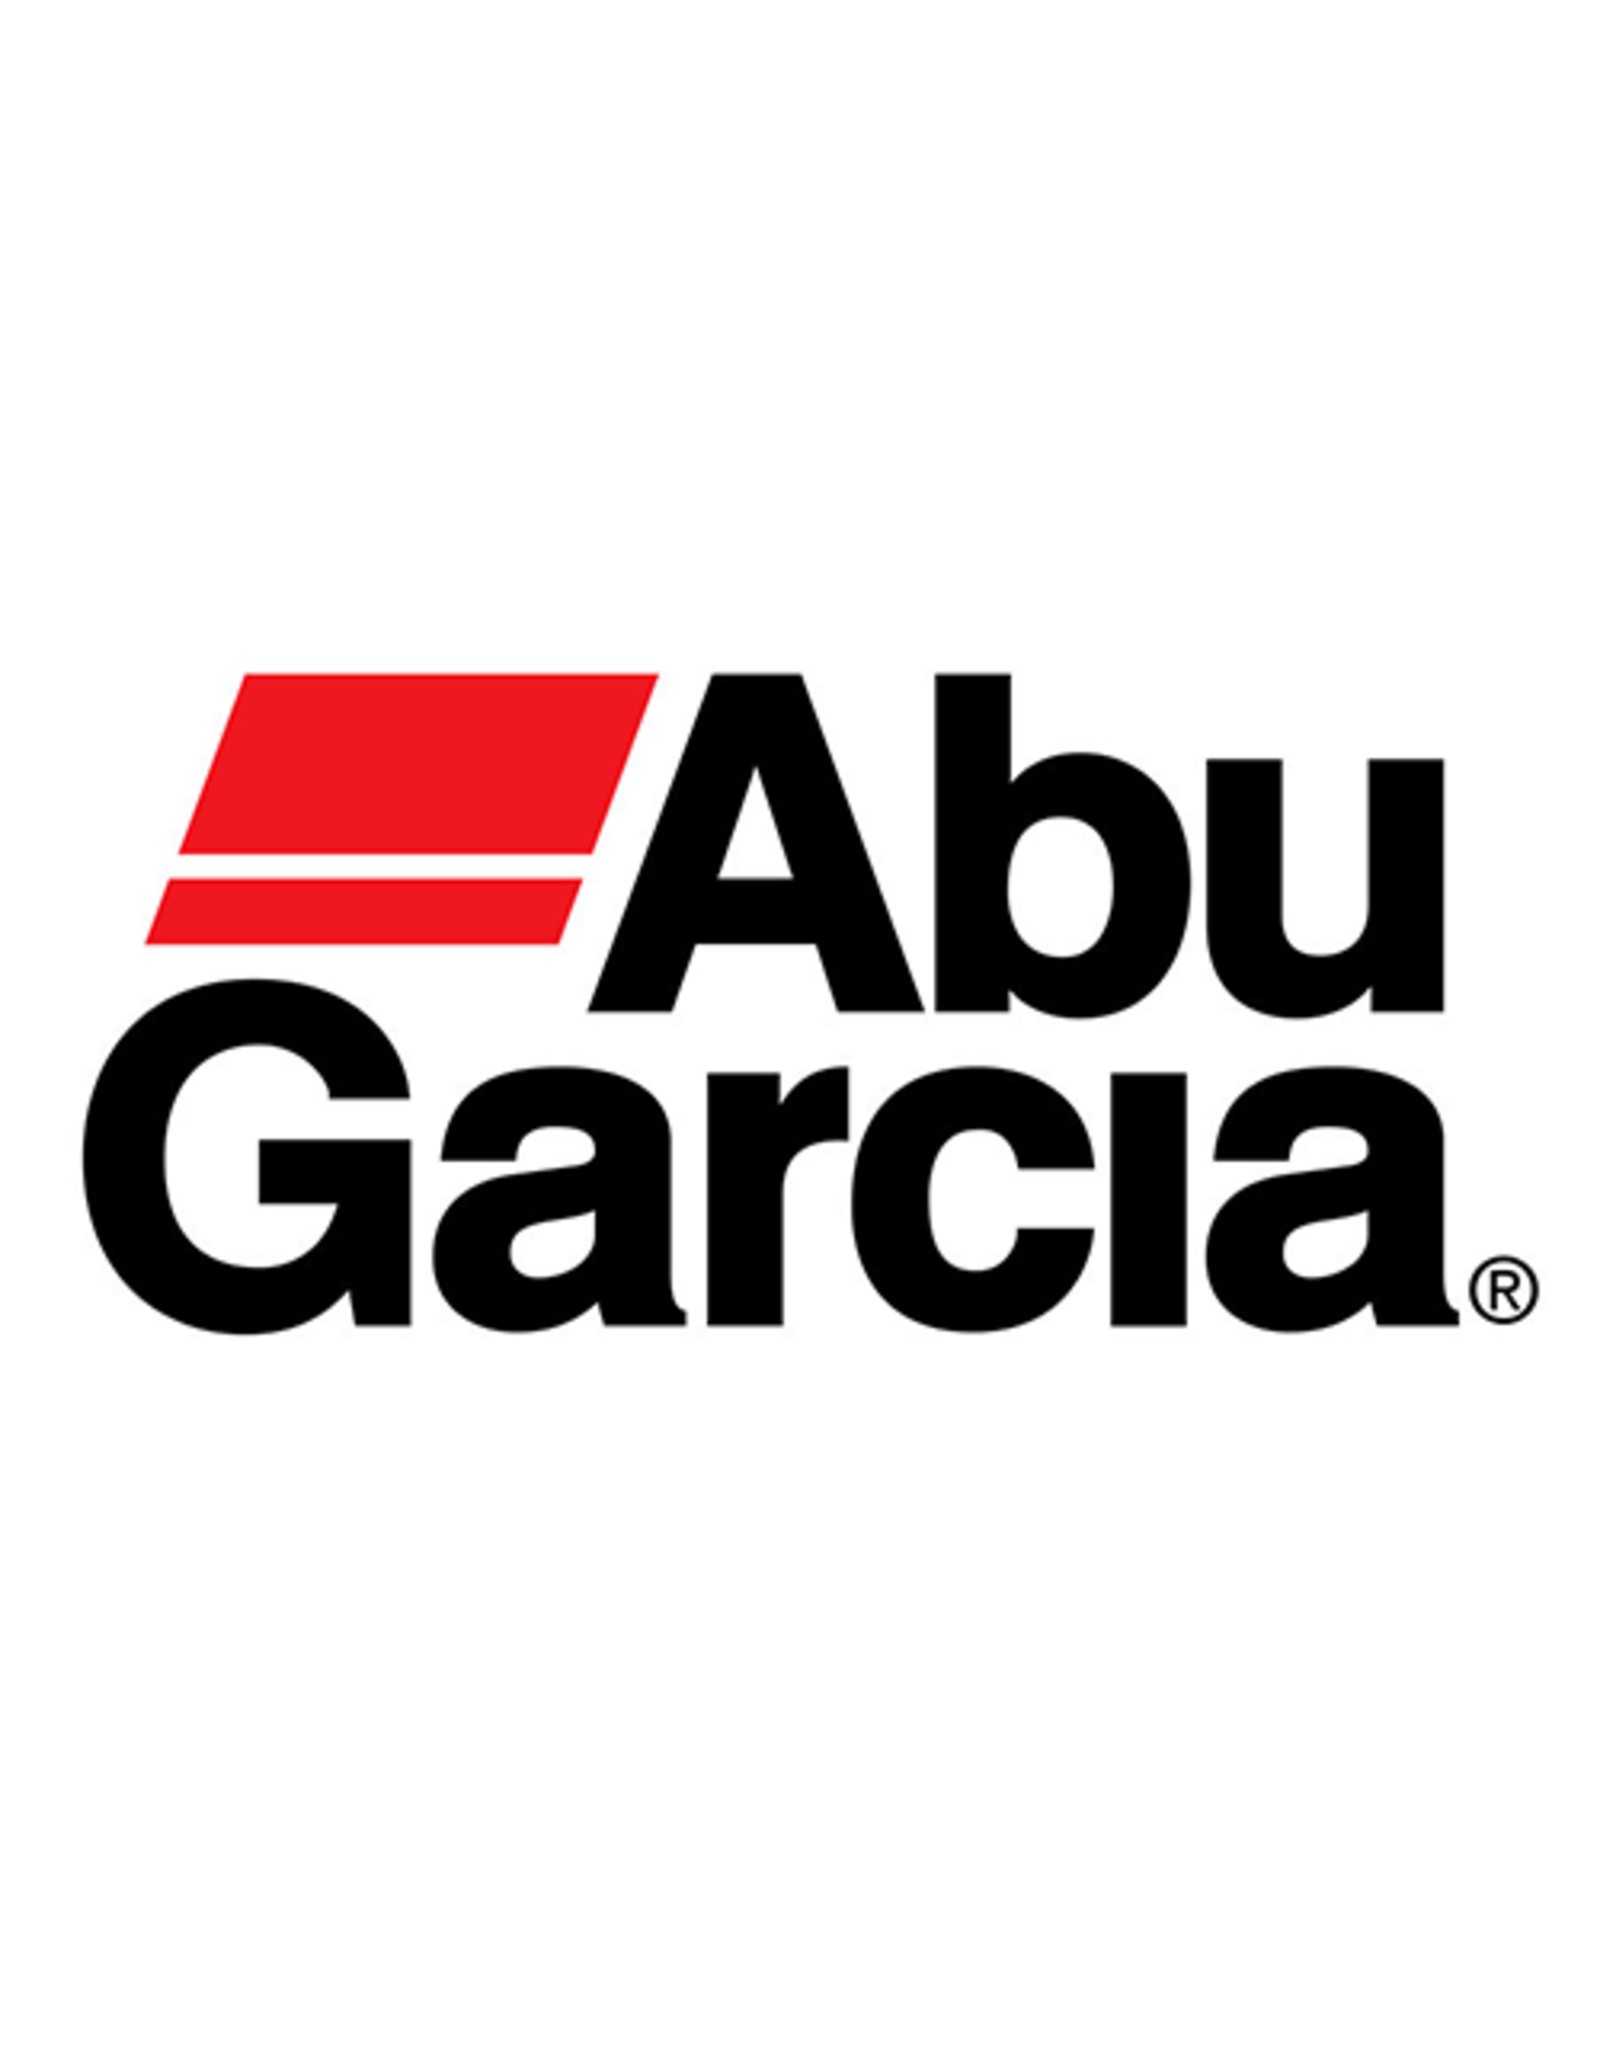 Abu Garcia 1115430  CAST CONTROL CAP